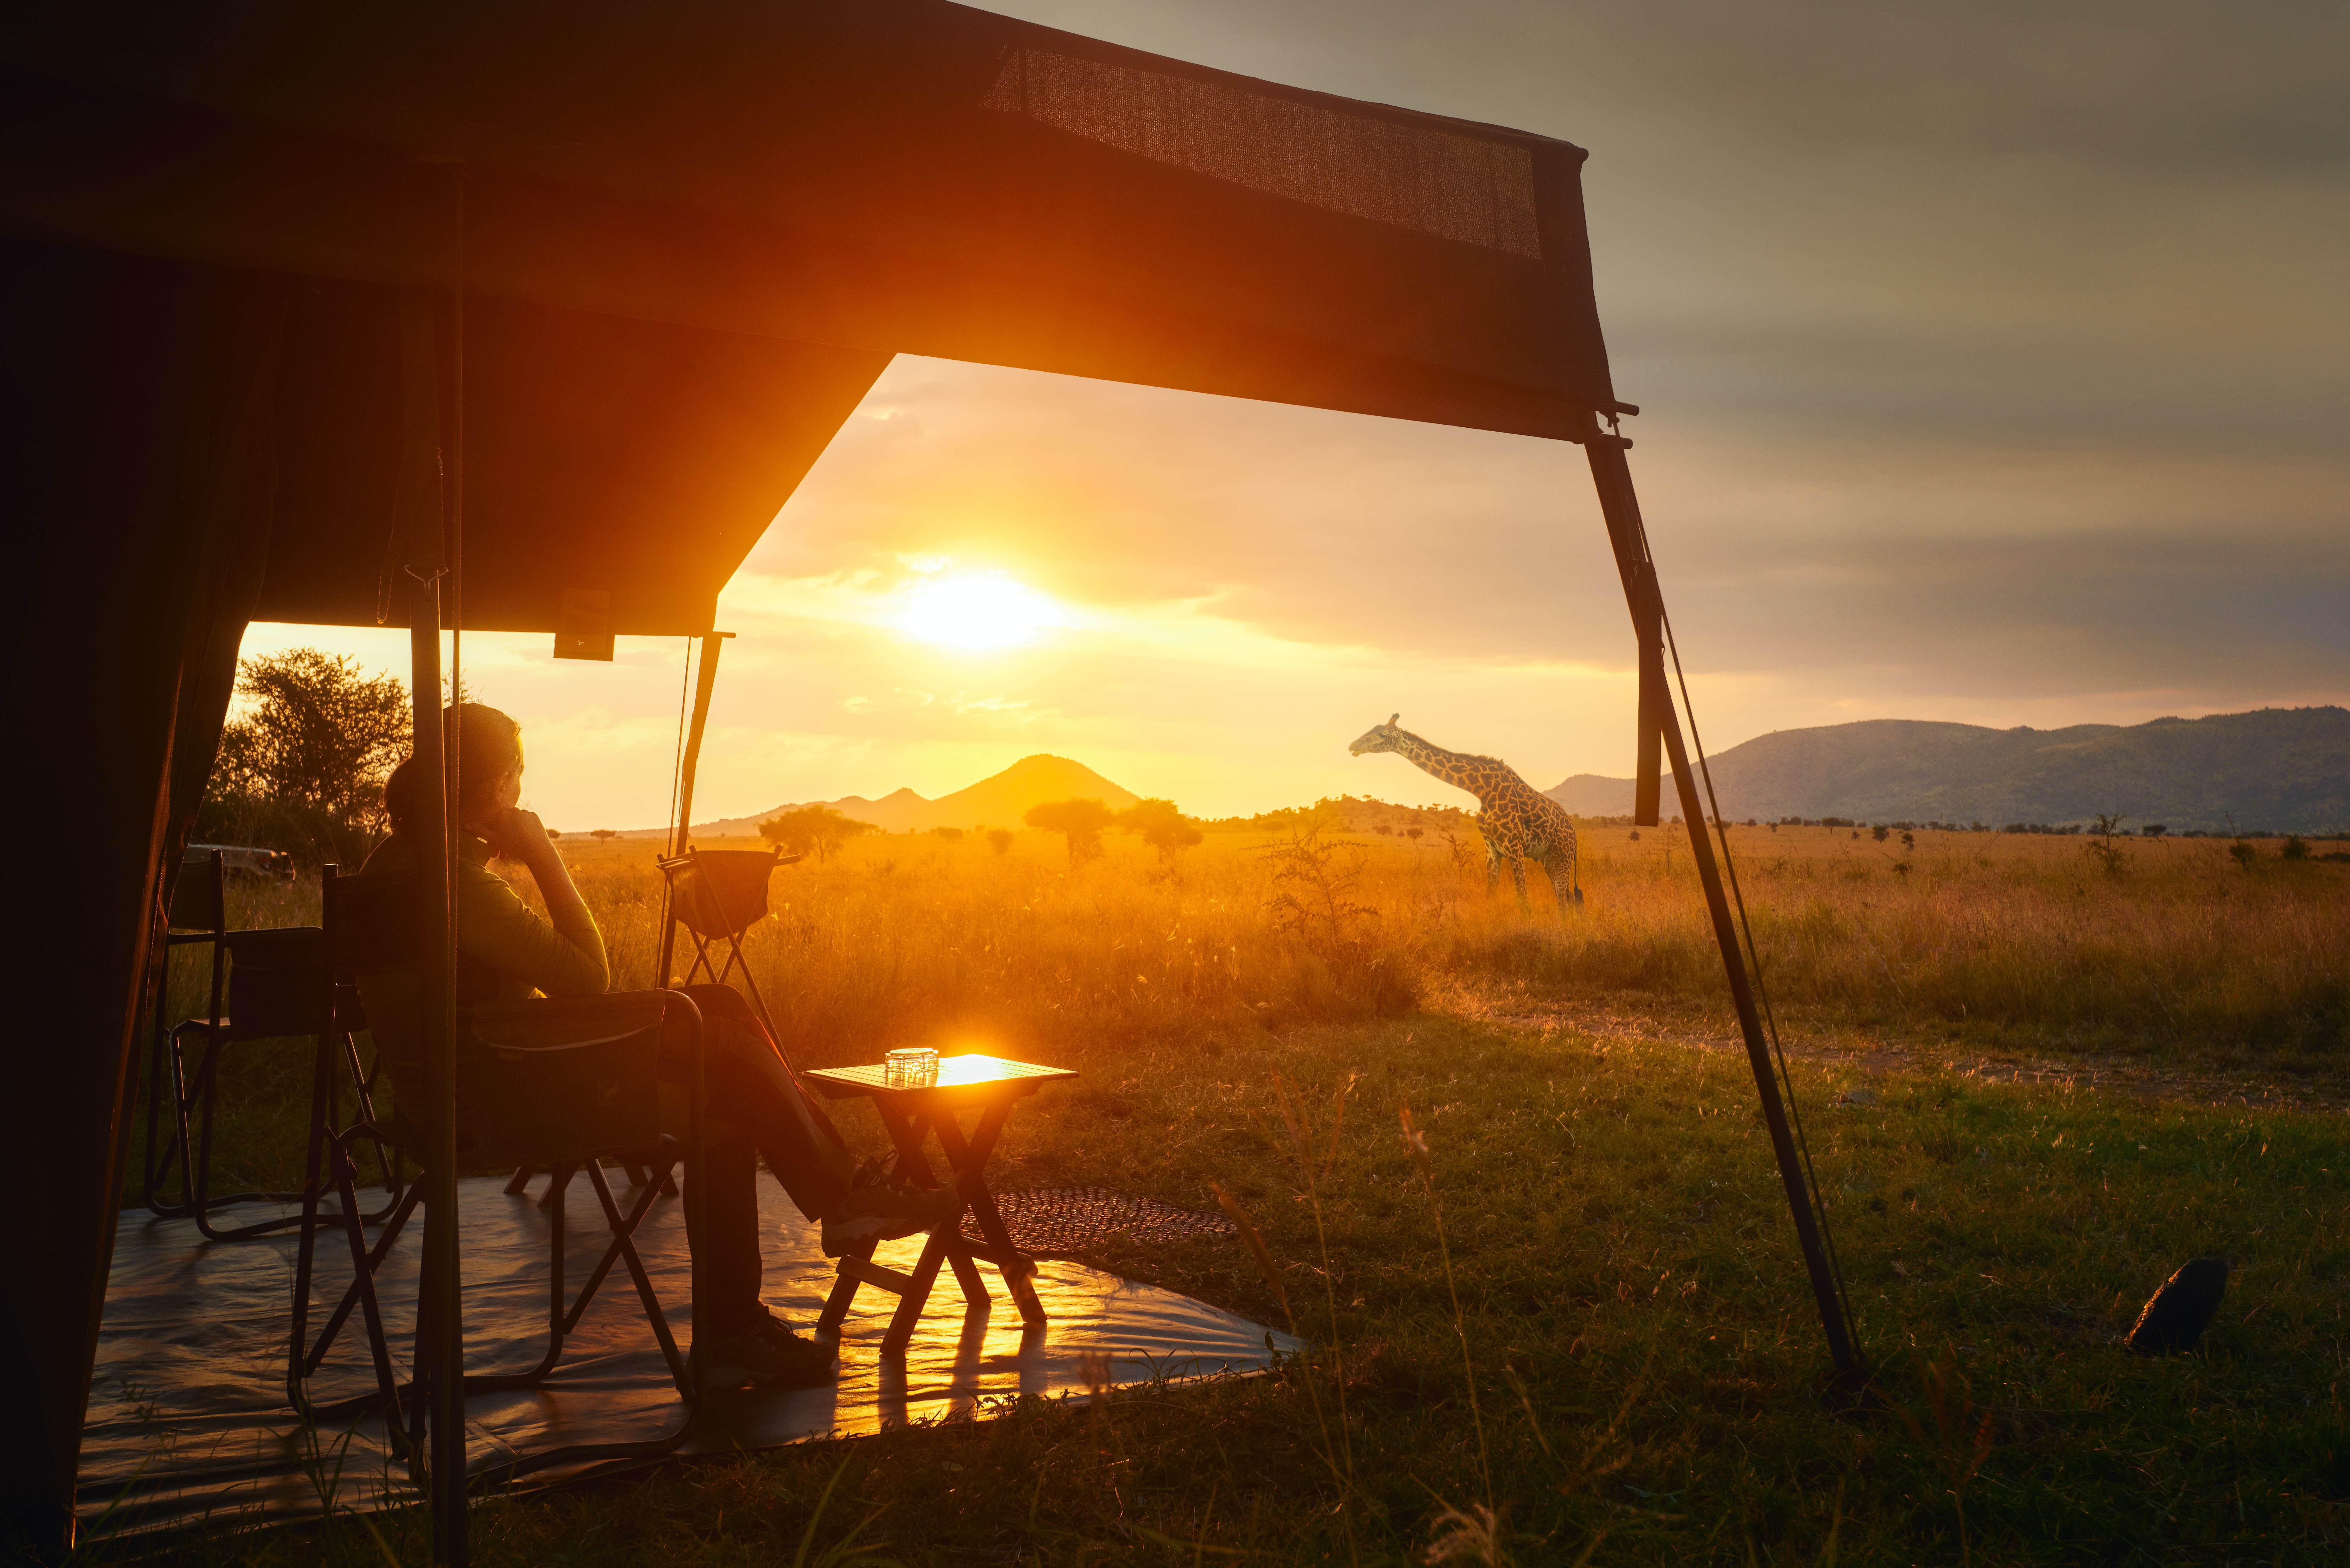 Une femme se détend dans un pavillon de safari avec une girafe en arrière-plan | Source : Shutterstock